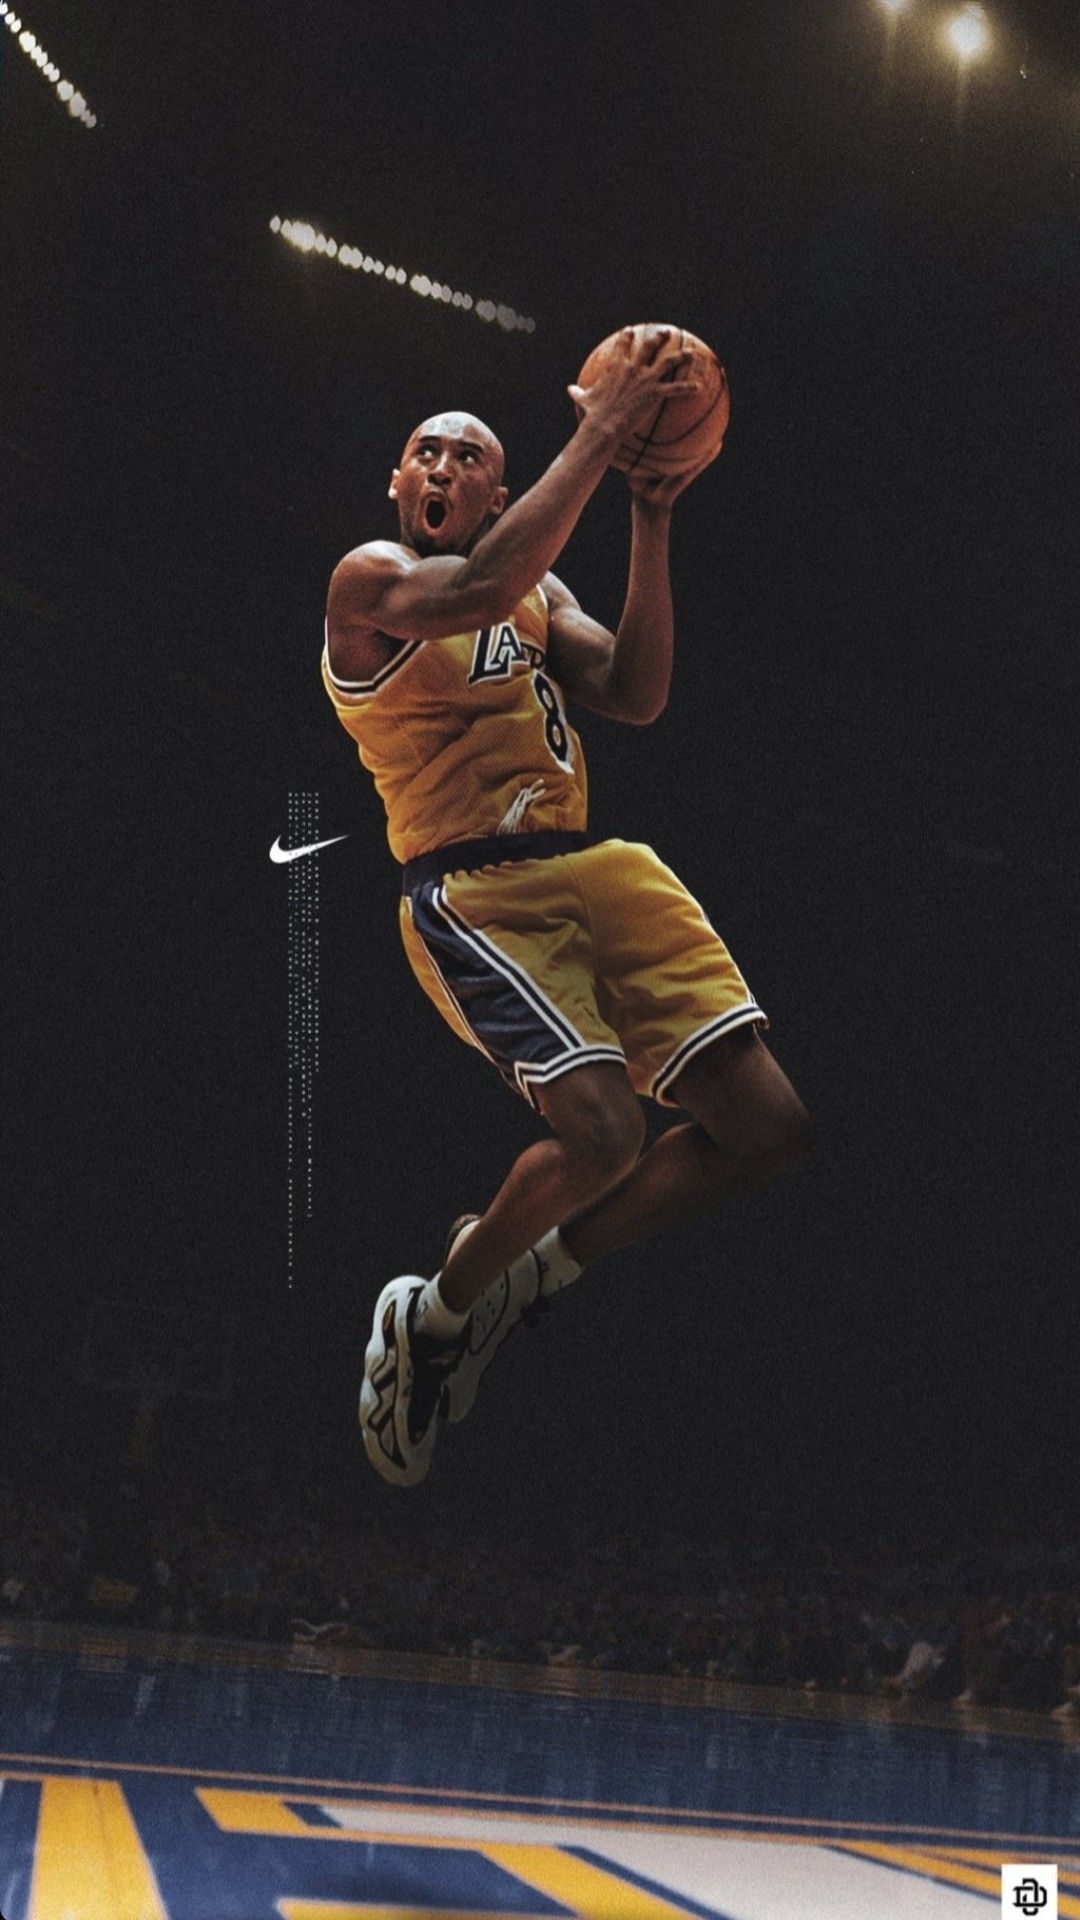 35+ Best Kobe Bryant HD Wallpapers [ Ultra HD ]